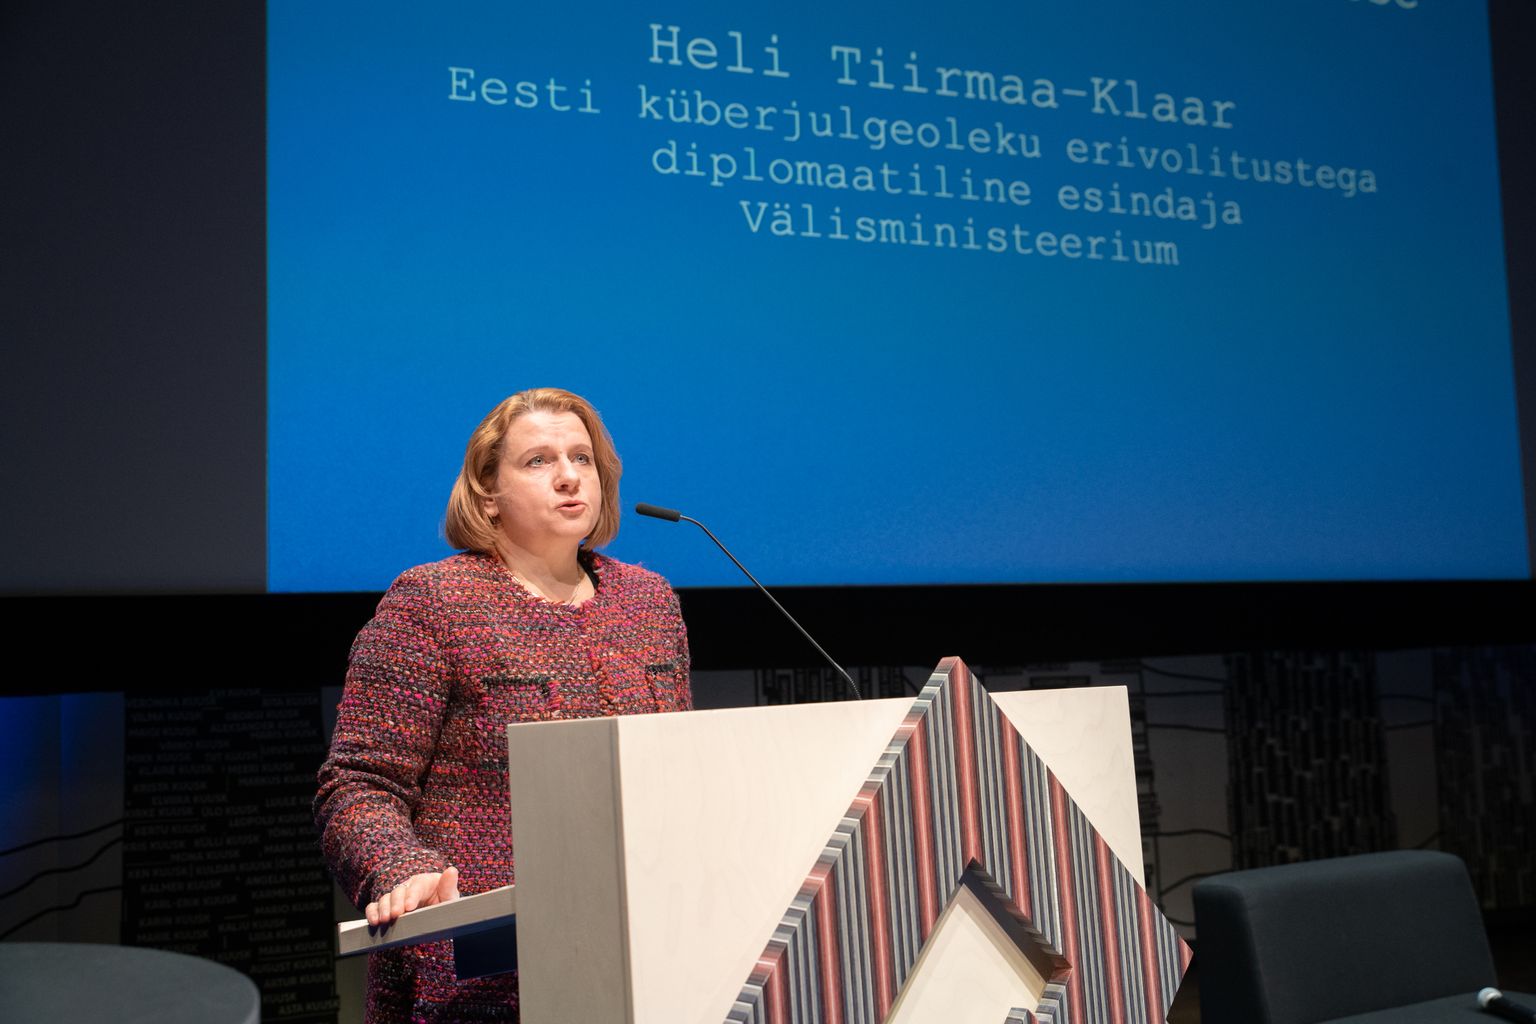 Küberjulgeoleku erivolitustega esindaja Heli Tiirmaa-Klaar.